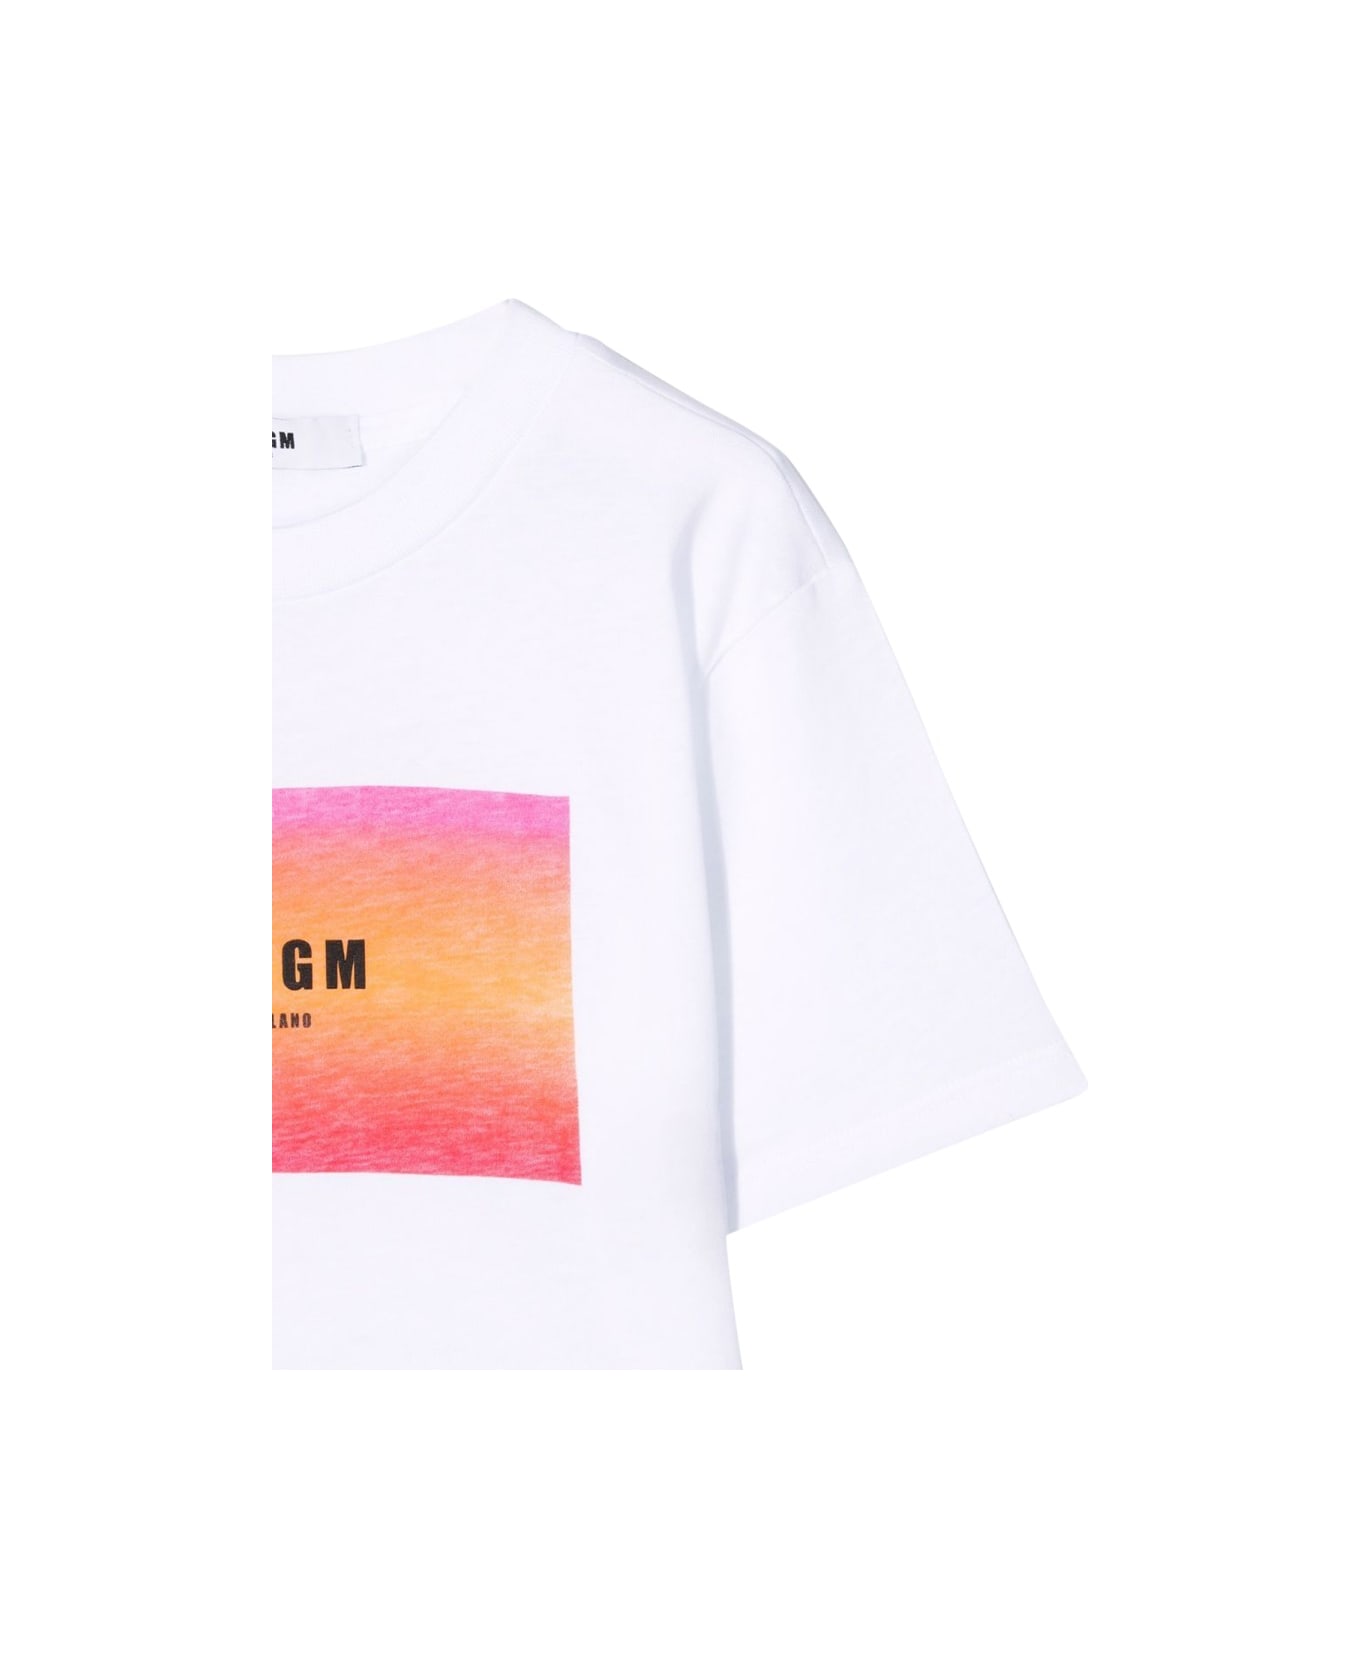 MSGM T-shirt - WHITE